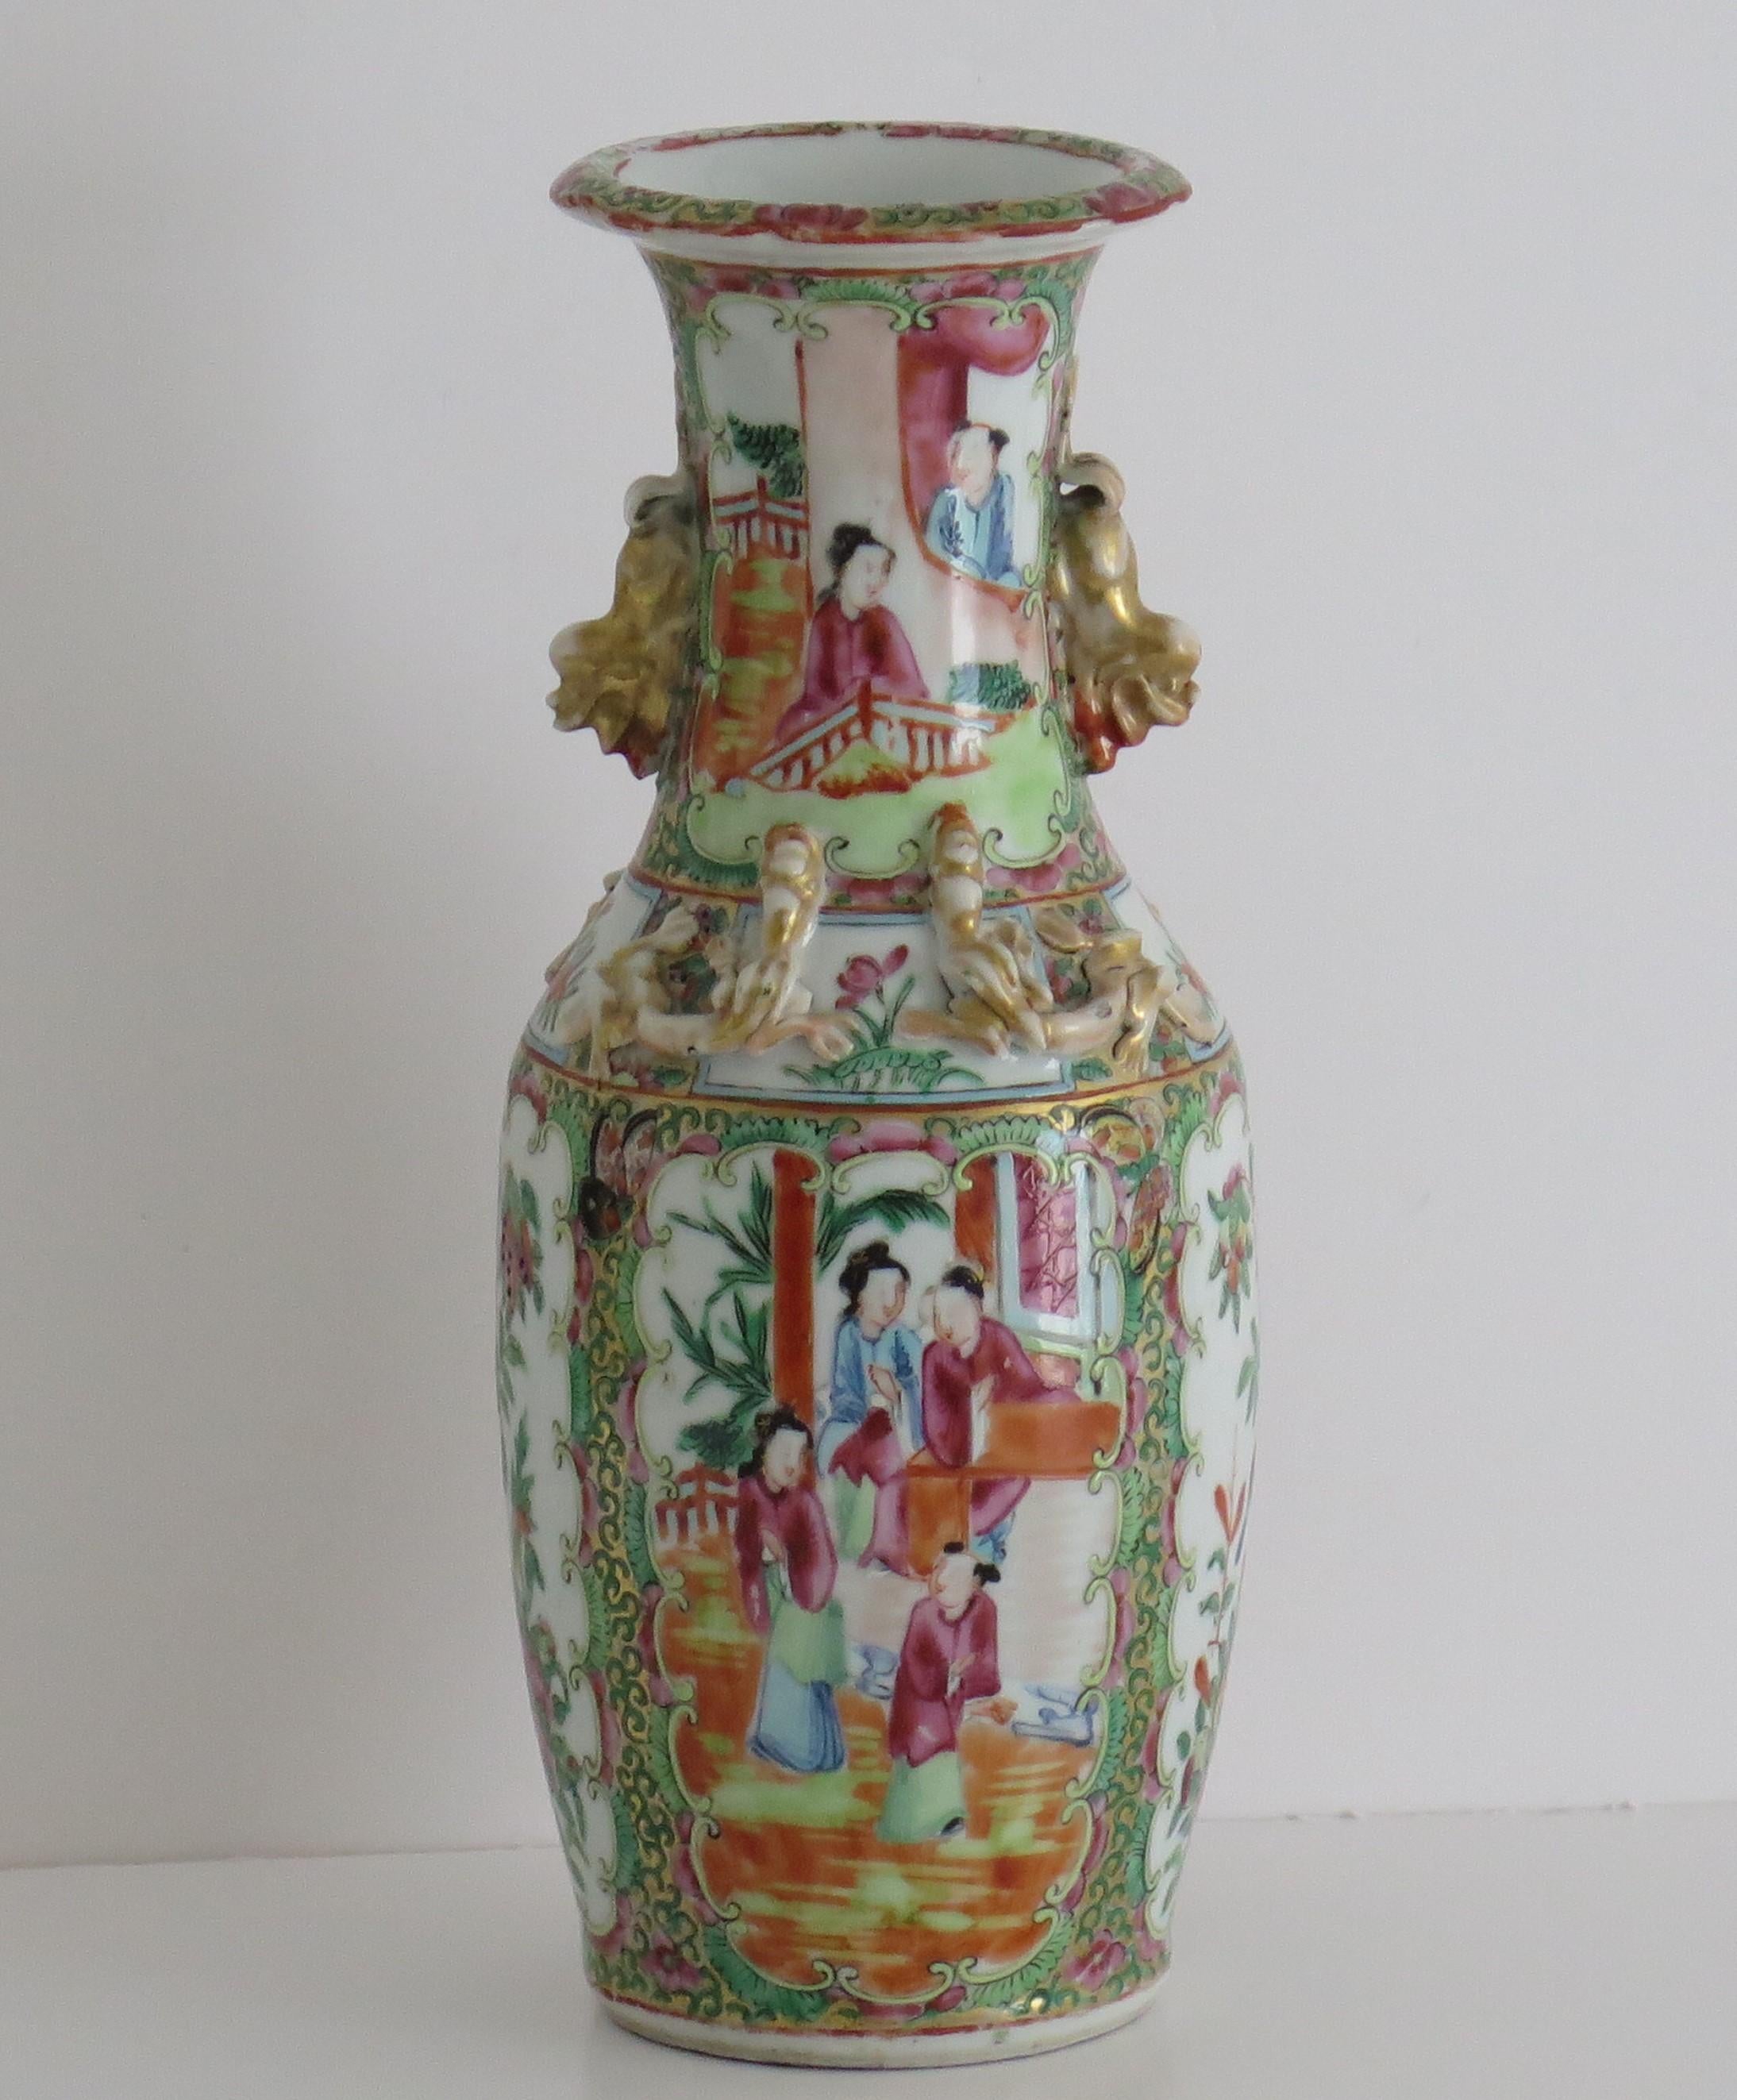 Dies ist eine sehr dekorative chinesische Export, Kanton Porzellan, Rose Medaillon Vase, die wir auf das 19. Jahrhundert, Qing-Dynastie, ca. 1840.

Die Vase hat eine Balusterform mit ausgestelltem Rand und ist mit zwei vergoldeten Foo Dog Henkeln